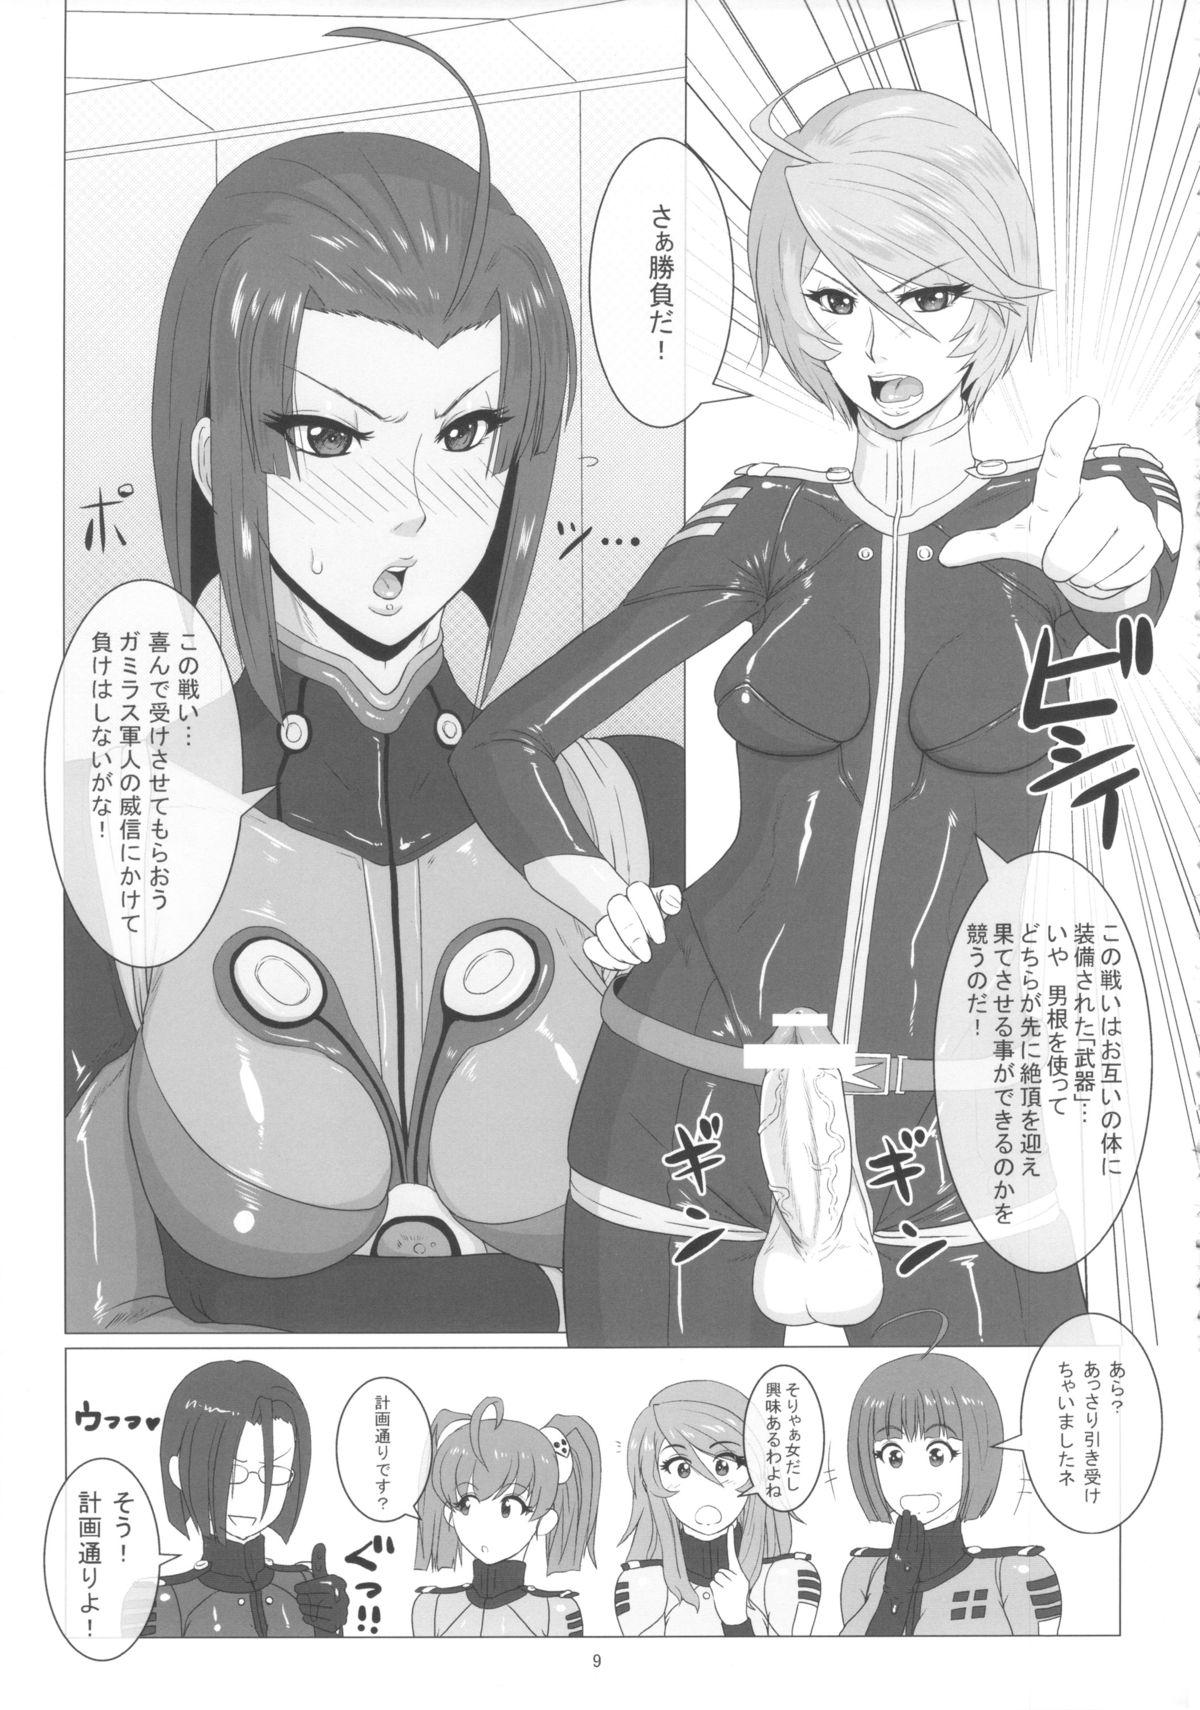 Teens ICE BOXXX 12 Teron jin no Shison Sonzoku ni Kan suru Kousatsu - Space battleship yamato Chacal - Page 10